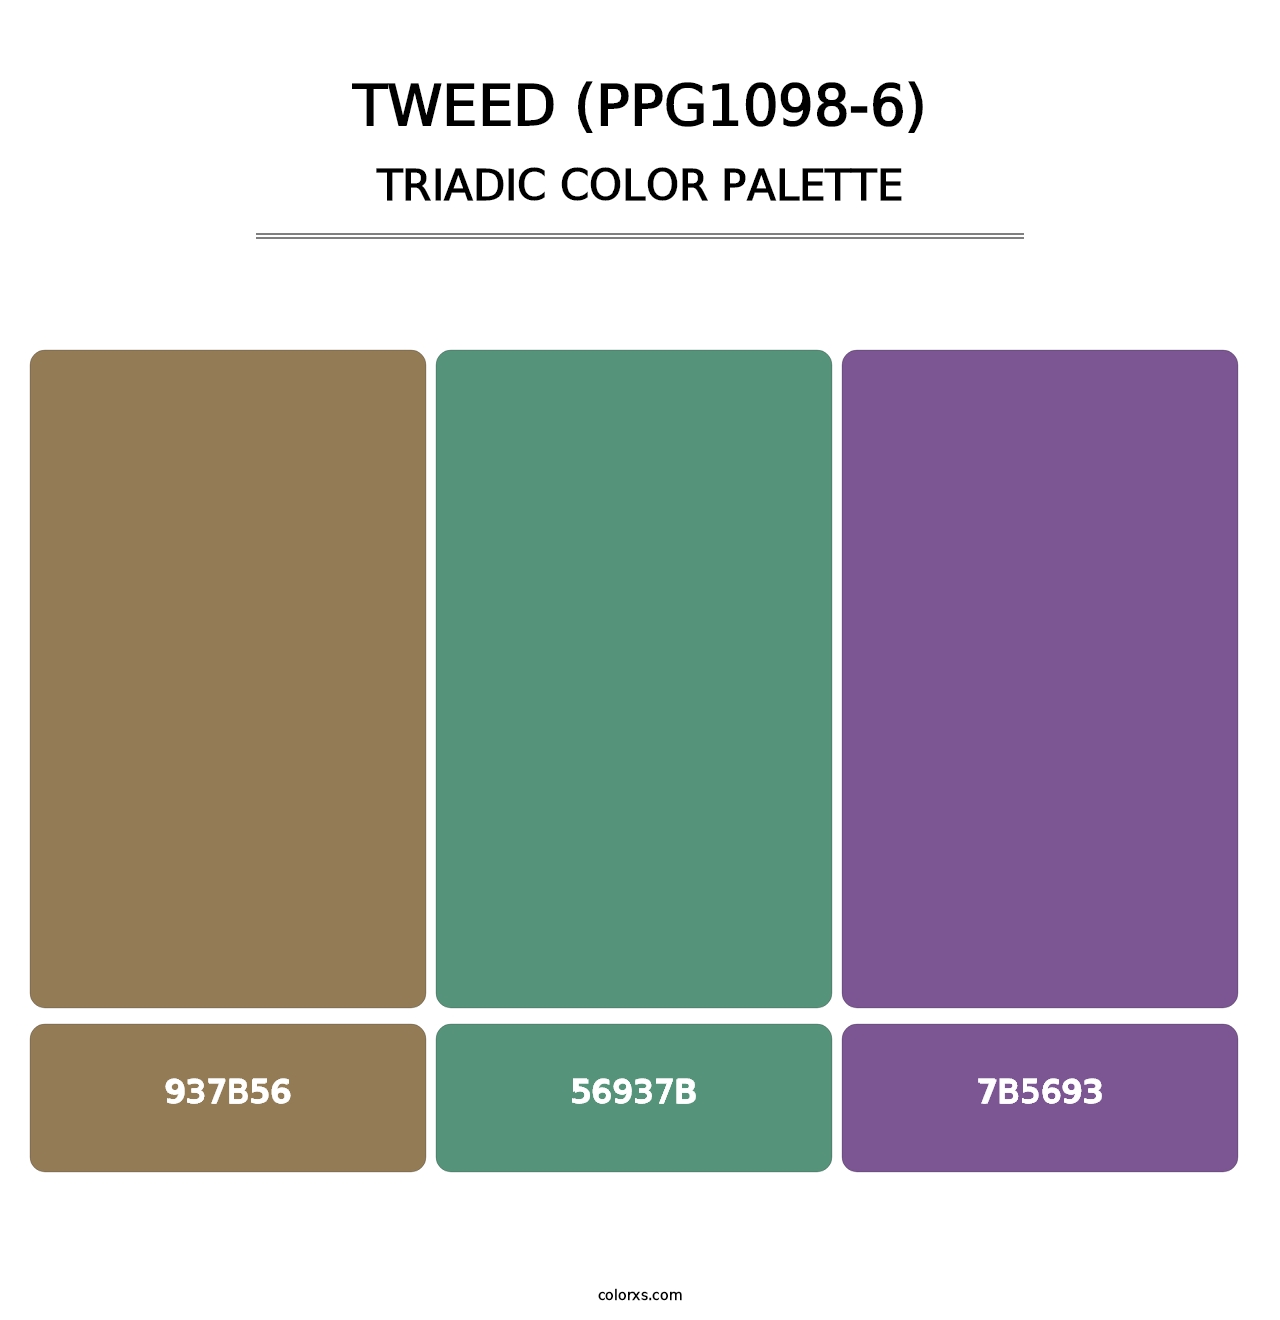 Tweed (PPG1098-6) - Triadic Color Palette